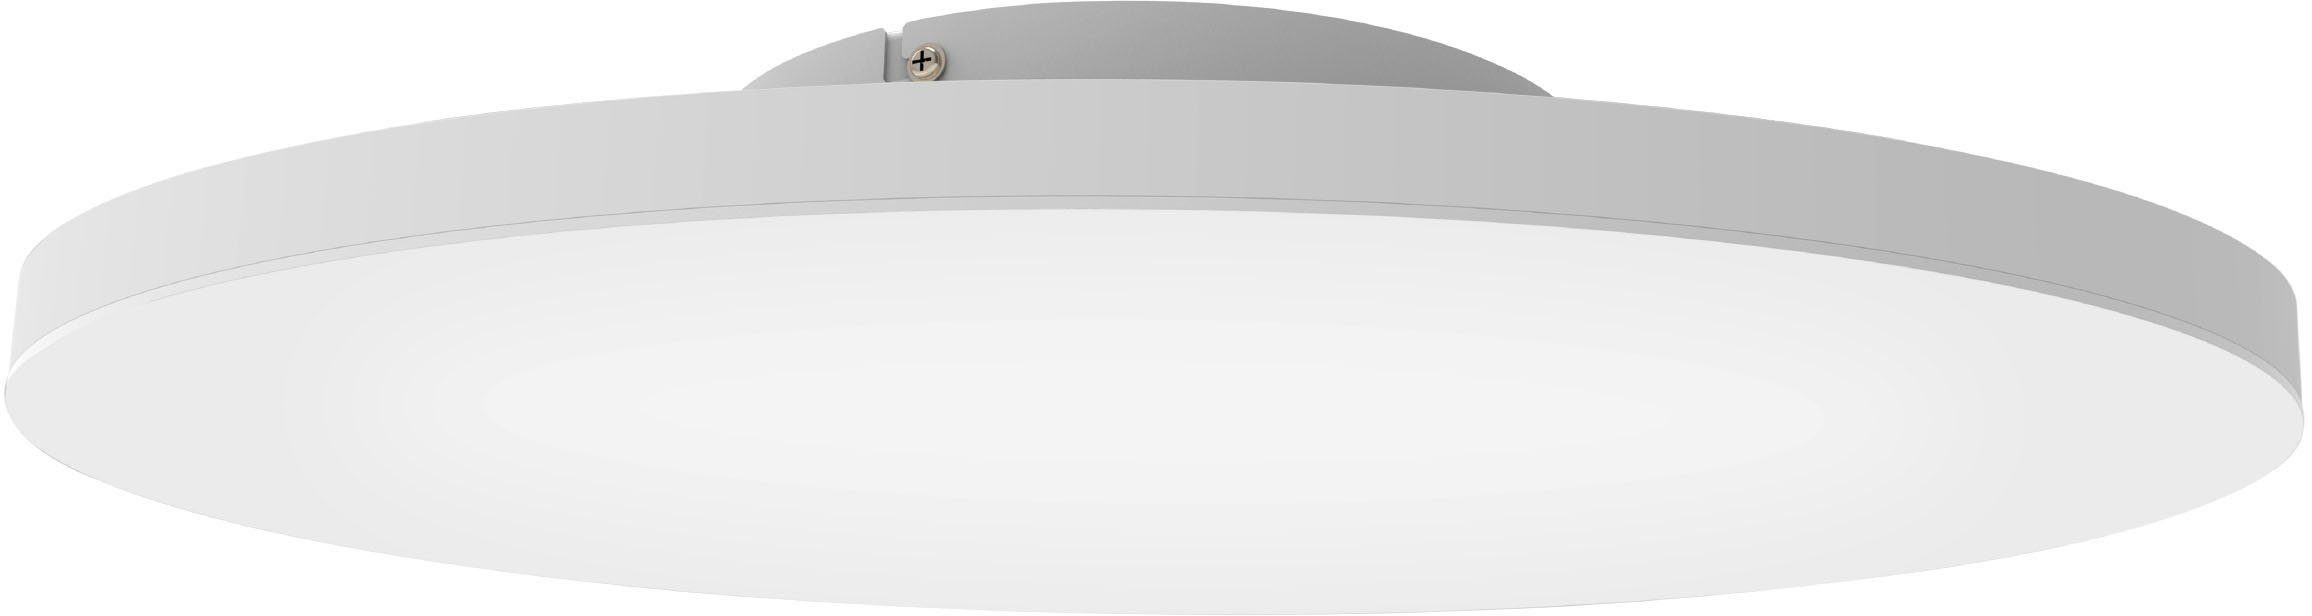 EGLO Deckenleuchte TURCONA-Z, LED fest integriert, warmweiß - kaltweiß, Deckenleuchte in weiß aus Stahl, Alu - 34,2W - warmweiß - kaltweiß